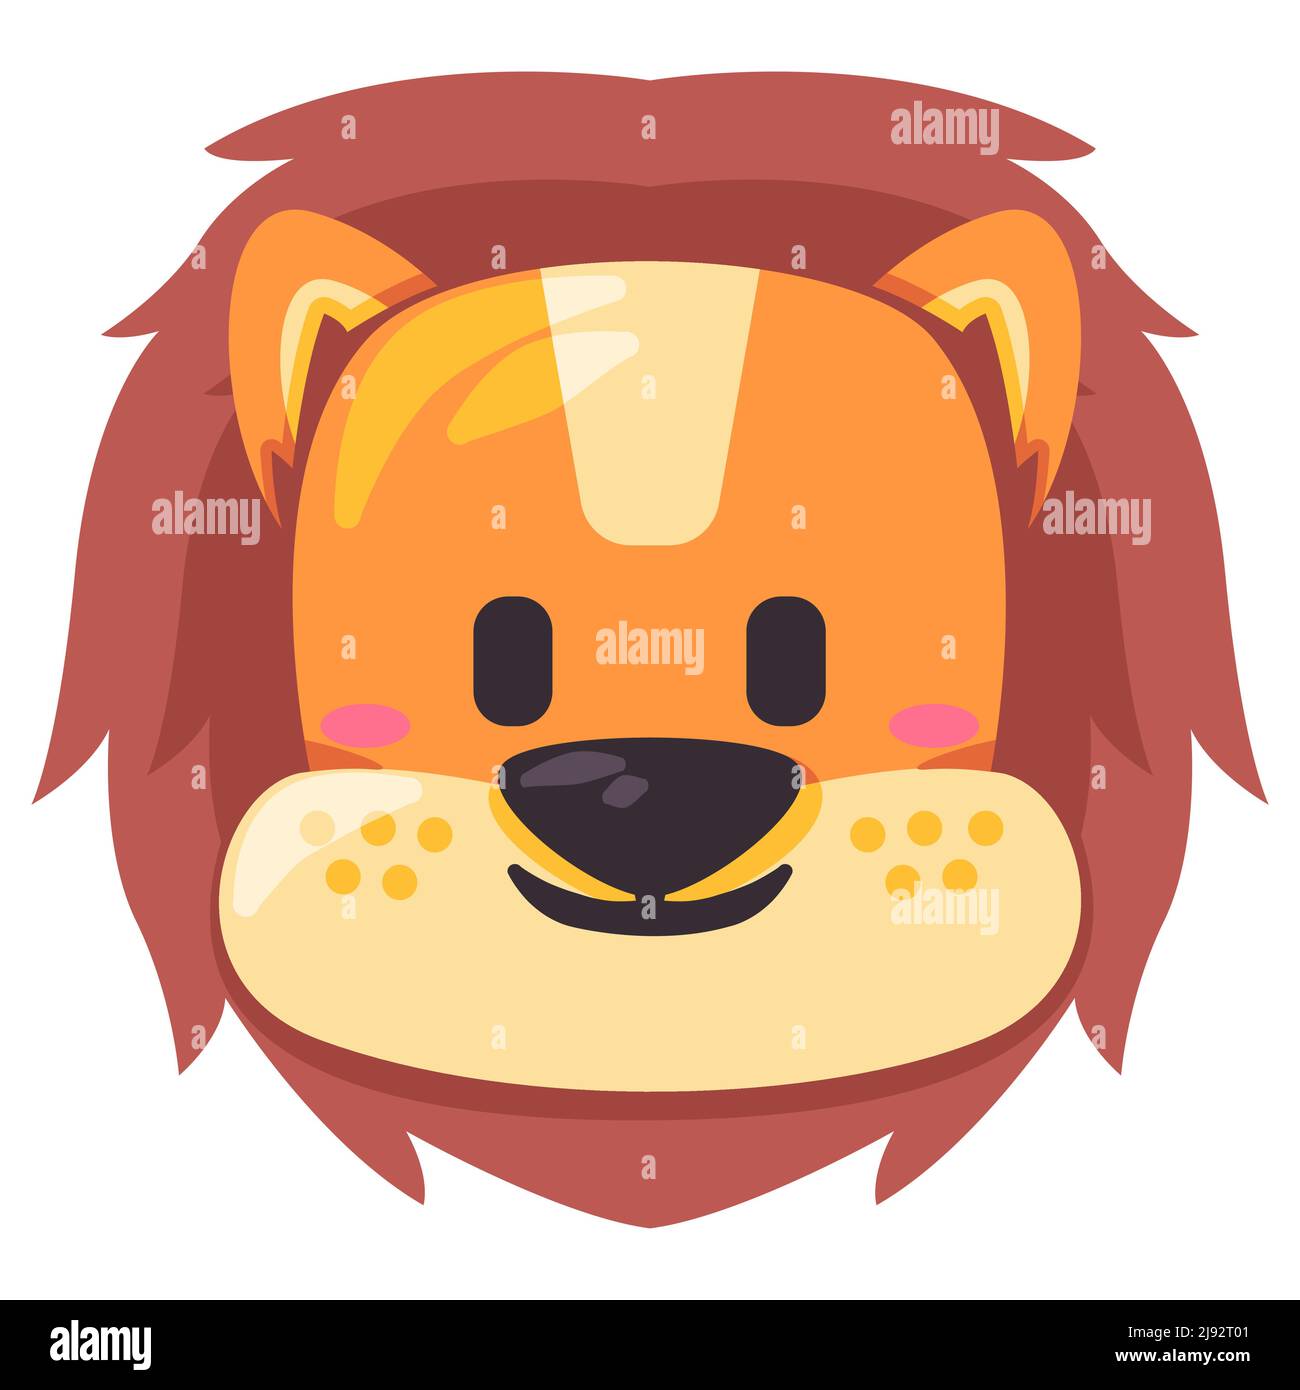 Lion adorable émoticone masque visage illustration sourire tête animal sauvage sourire et forme dessin dessin dessin animé plat enfants dessin Illustration de Vecteur